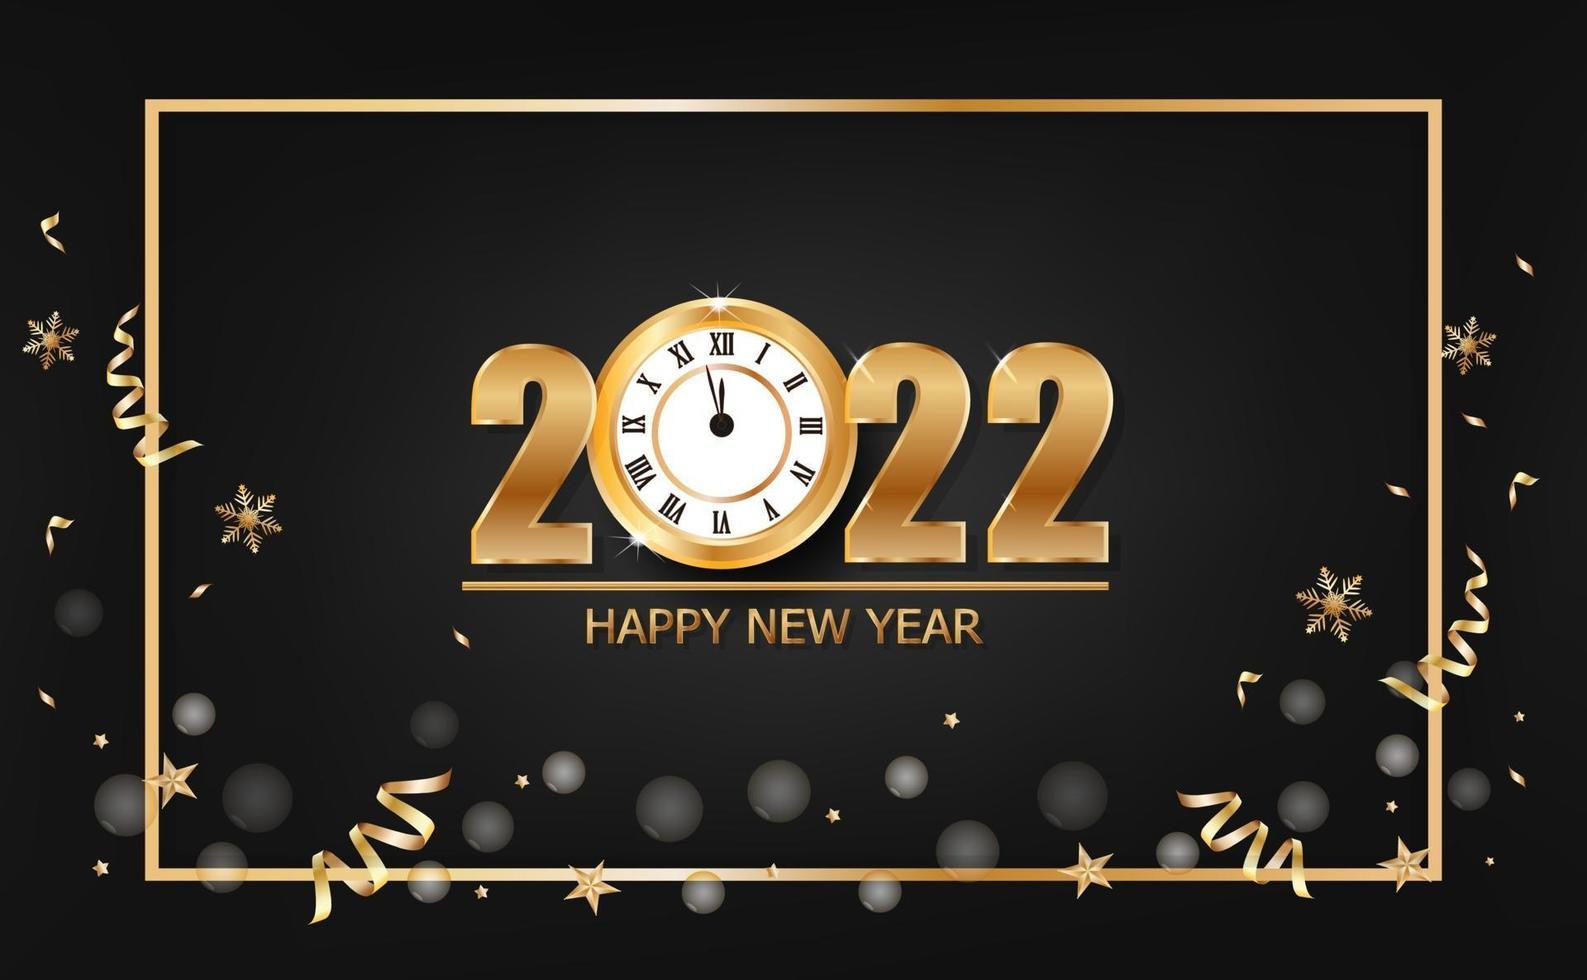 banner de feliz ano novo de 2022 com relógio de ouro em fundo preto vetor